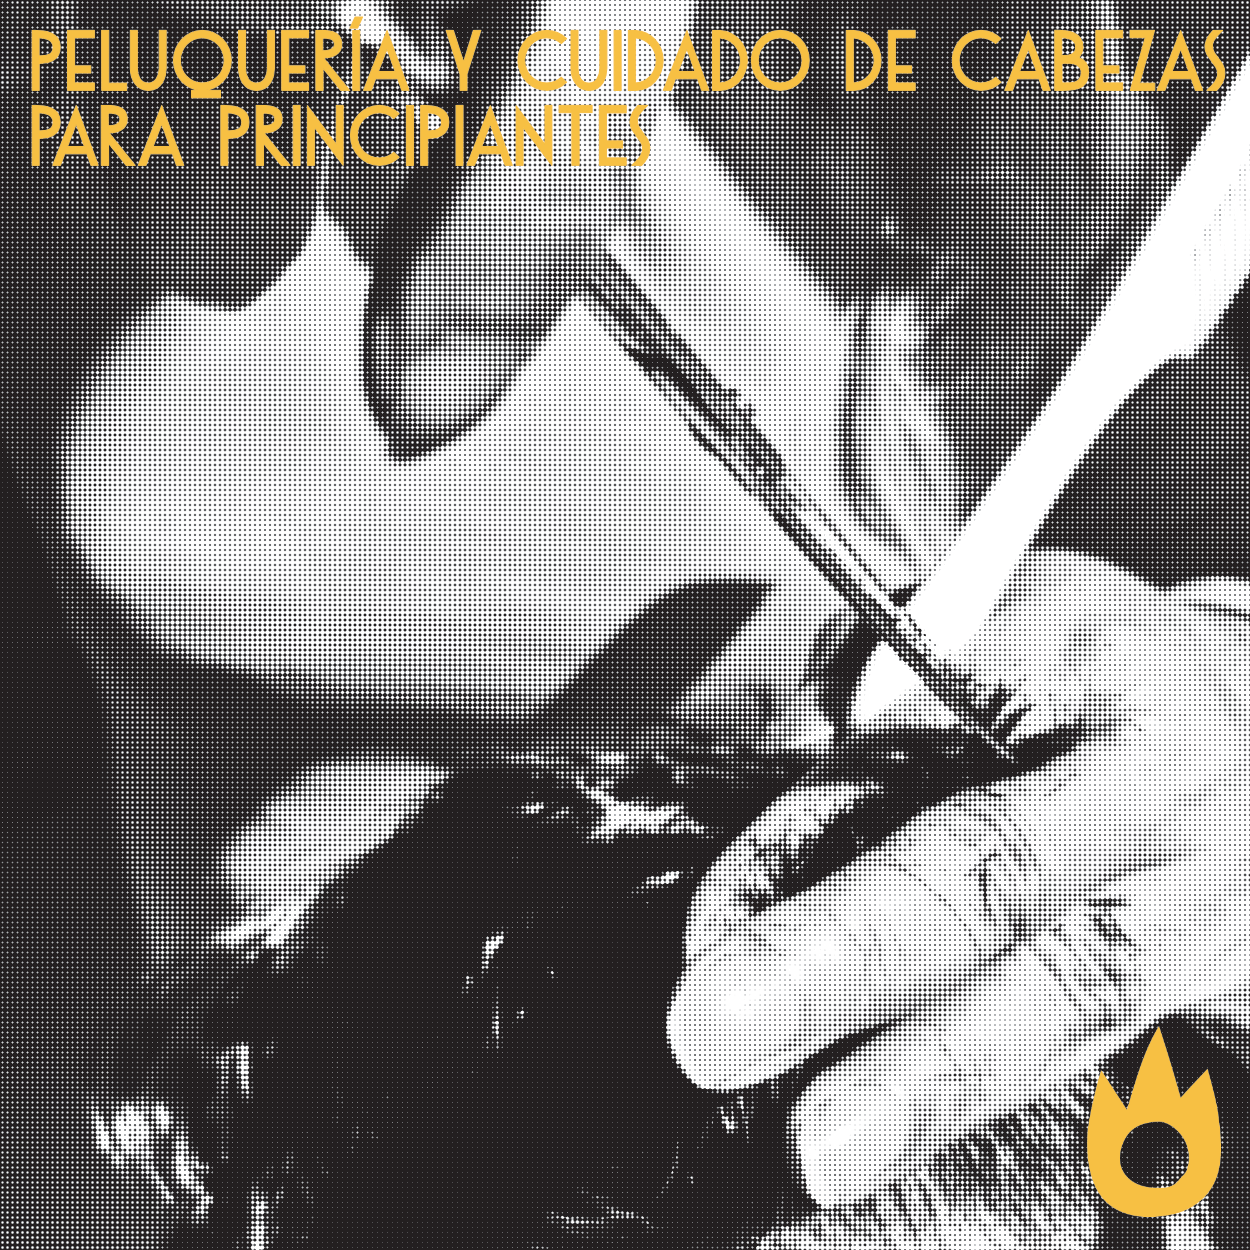 En las imágenes aparecen unas manos, con unas tijeras y un peine, cortando el pelo de una persona cuidando la cabeza de otras personas